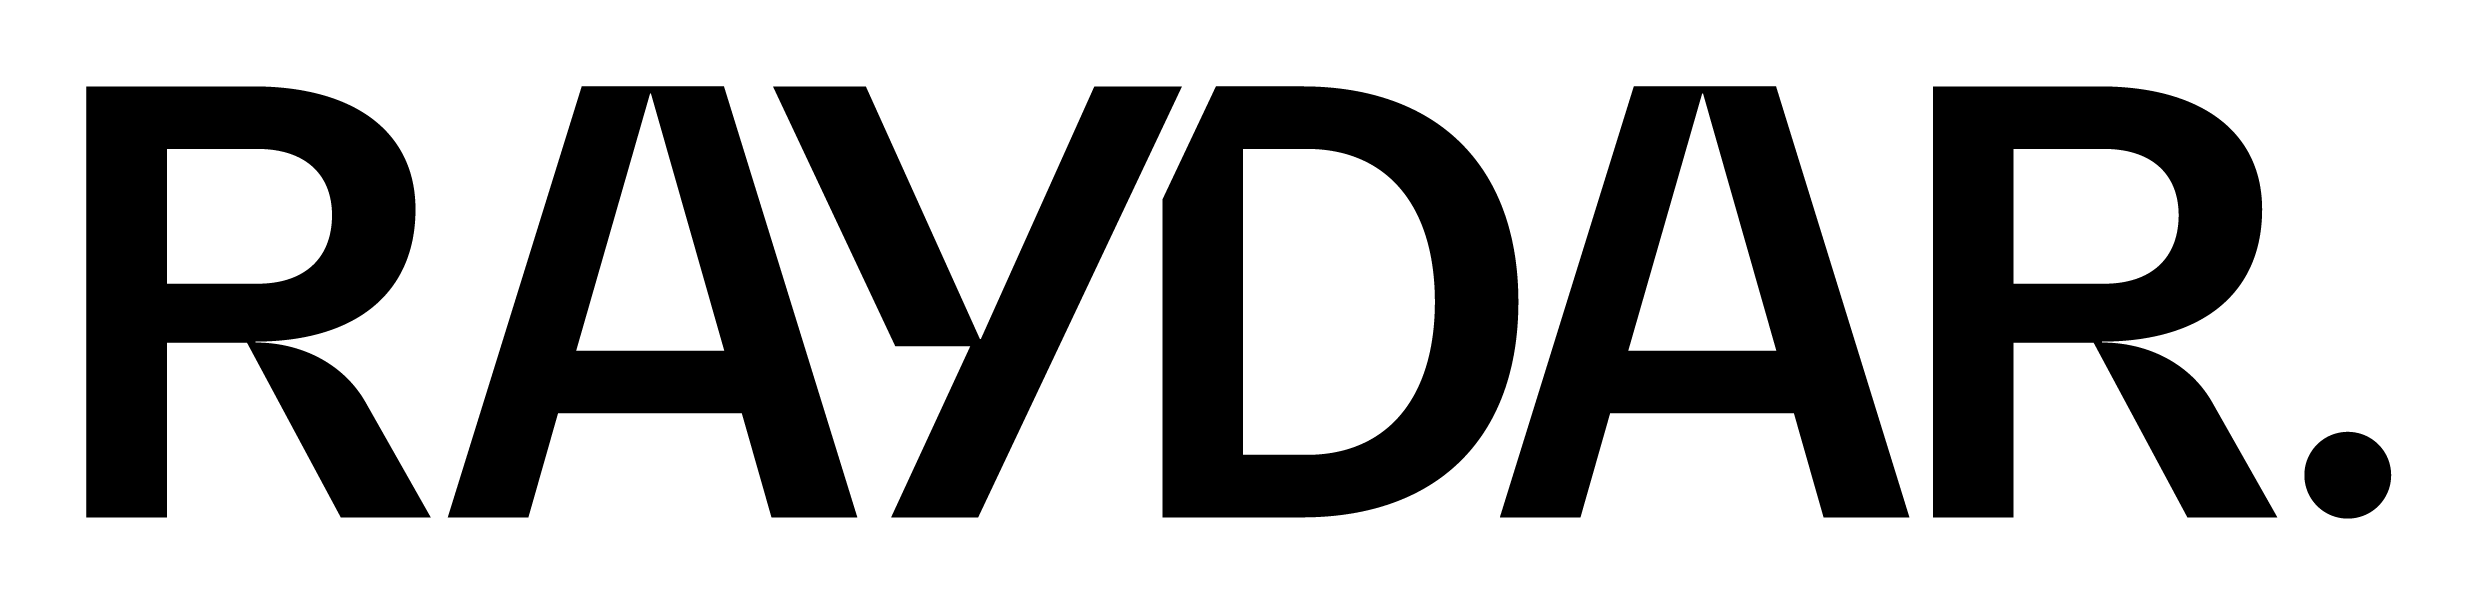 raydar-logo